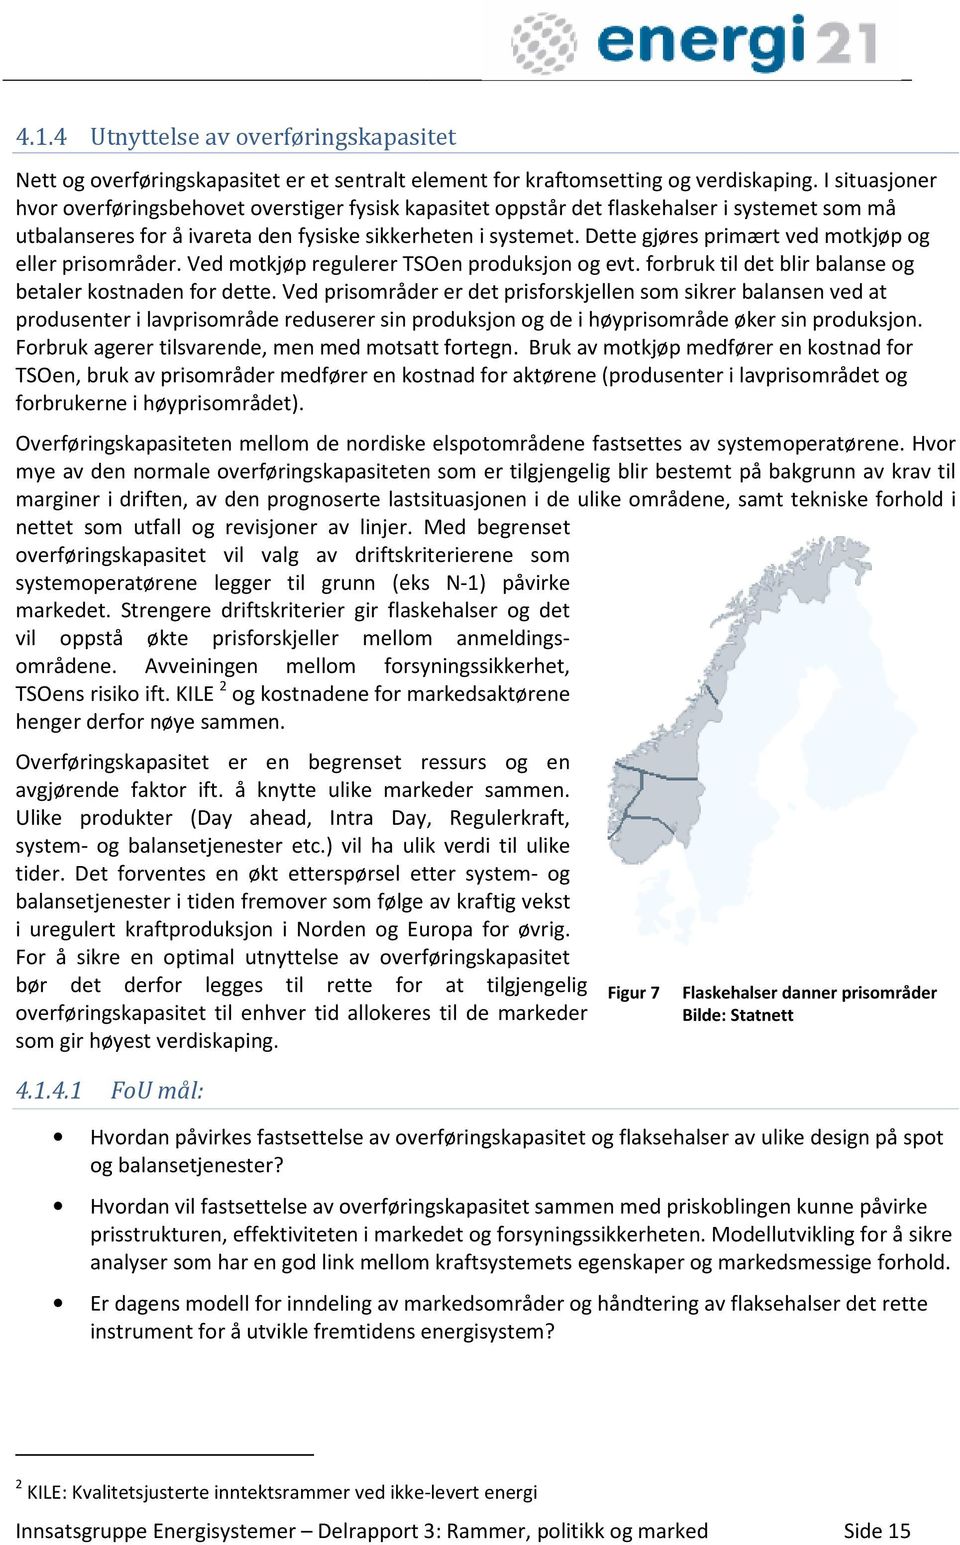 2 Forsyningssikkerhet Den siste vinterens erfaringer understreker at Norge fortsatt kan ha effektutfordringer i kraftsystemet.